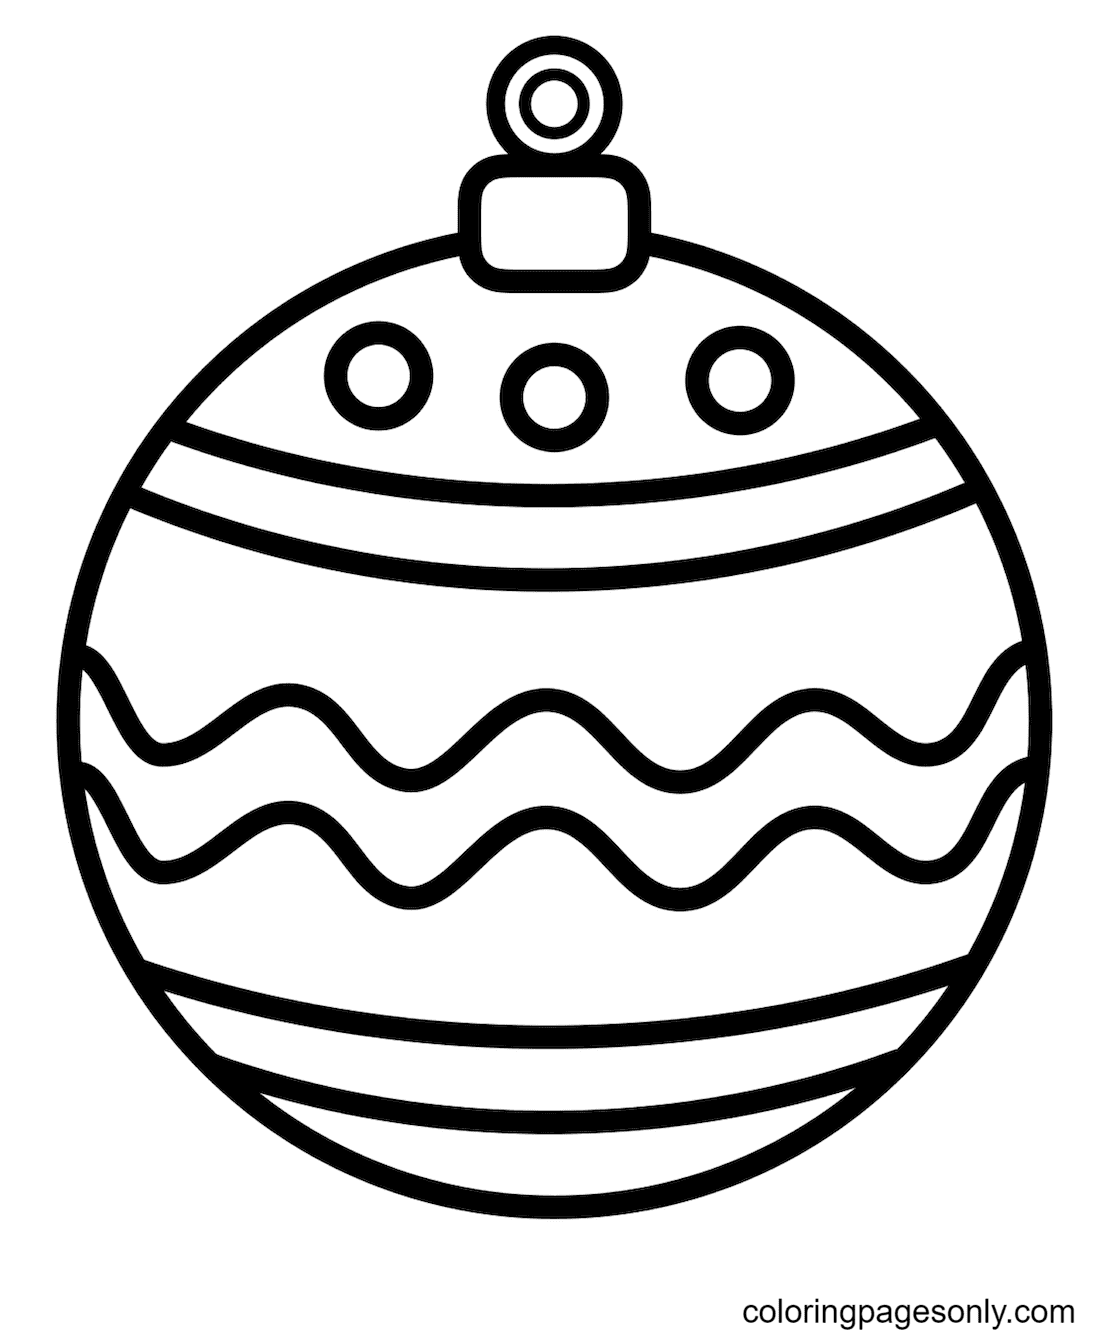 زخرفة كرة عيد الميلاد من زينة عيد الميلاد